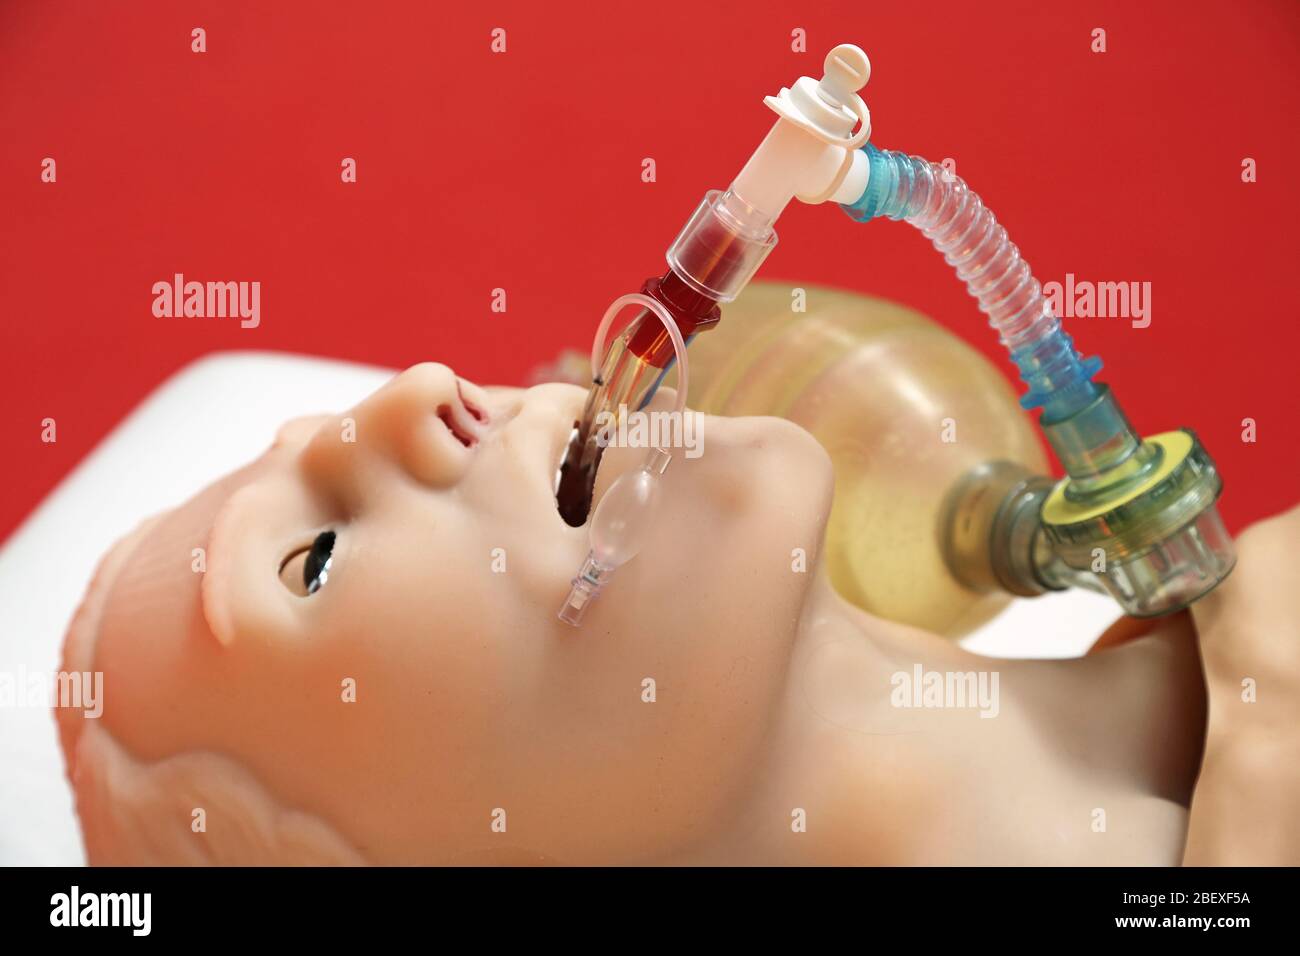 respiration artificielle sur le simulateur de patient Banque D'Images